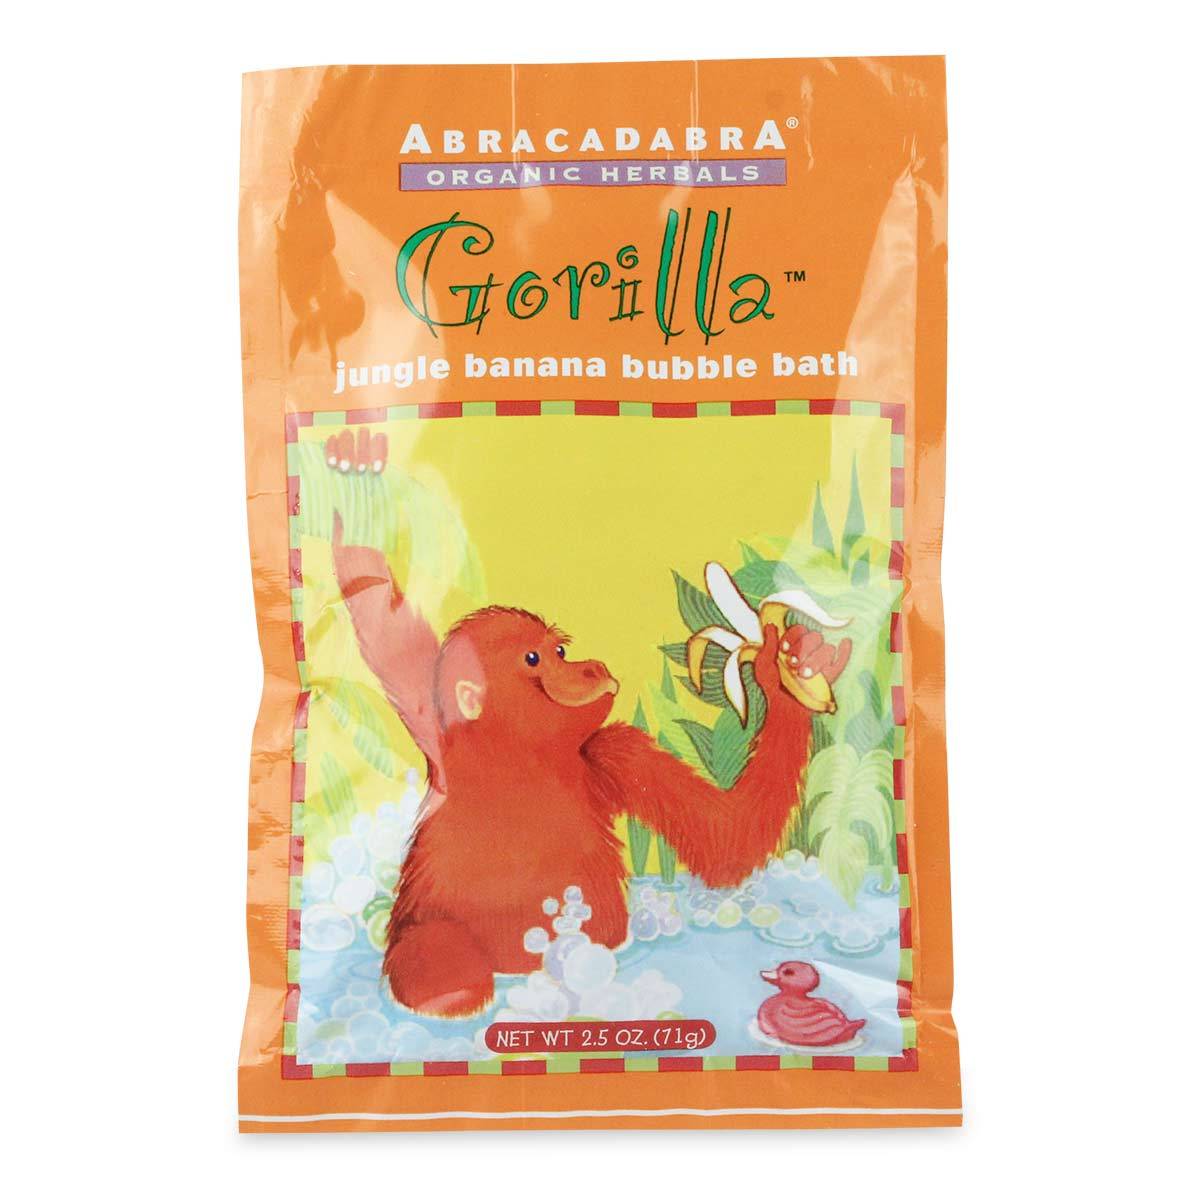 Primary image of Abracadabra Children's Gorilla Bubble Bath